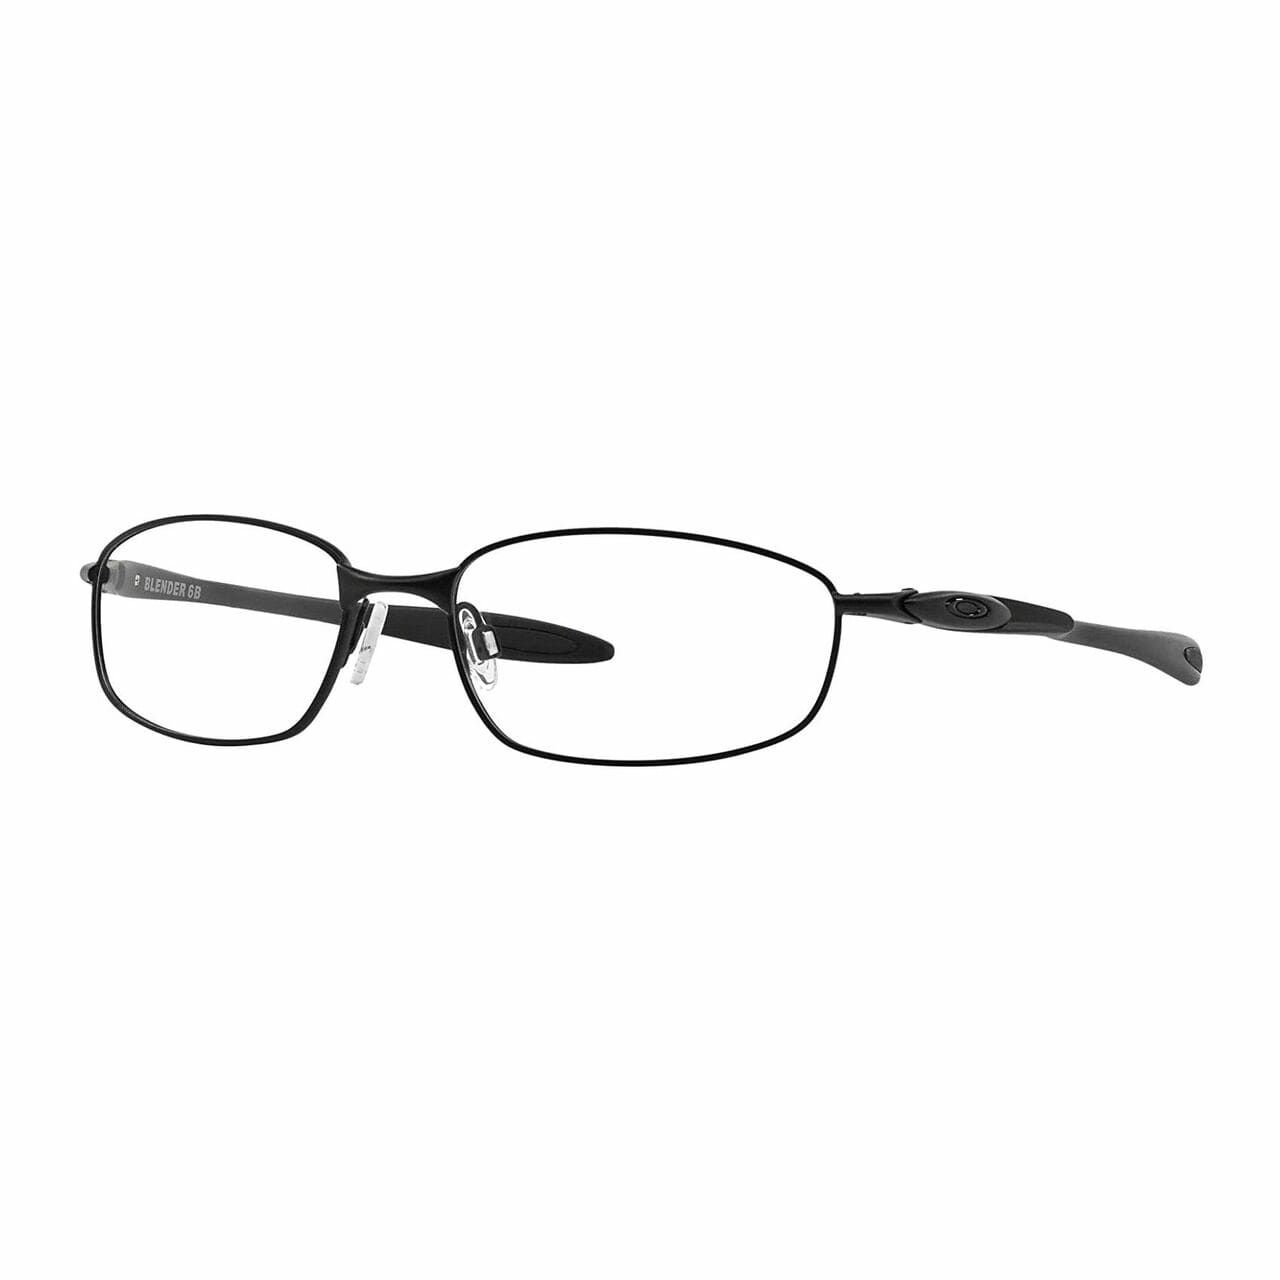 Oakley OX3162-0355 Blender 6B Satin Black Rectangular Men's Metal Eyeglasses 700285629063